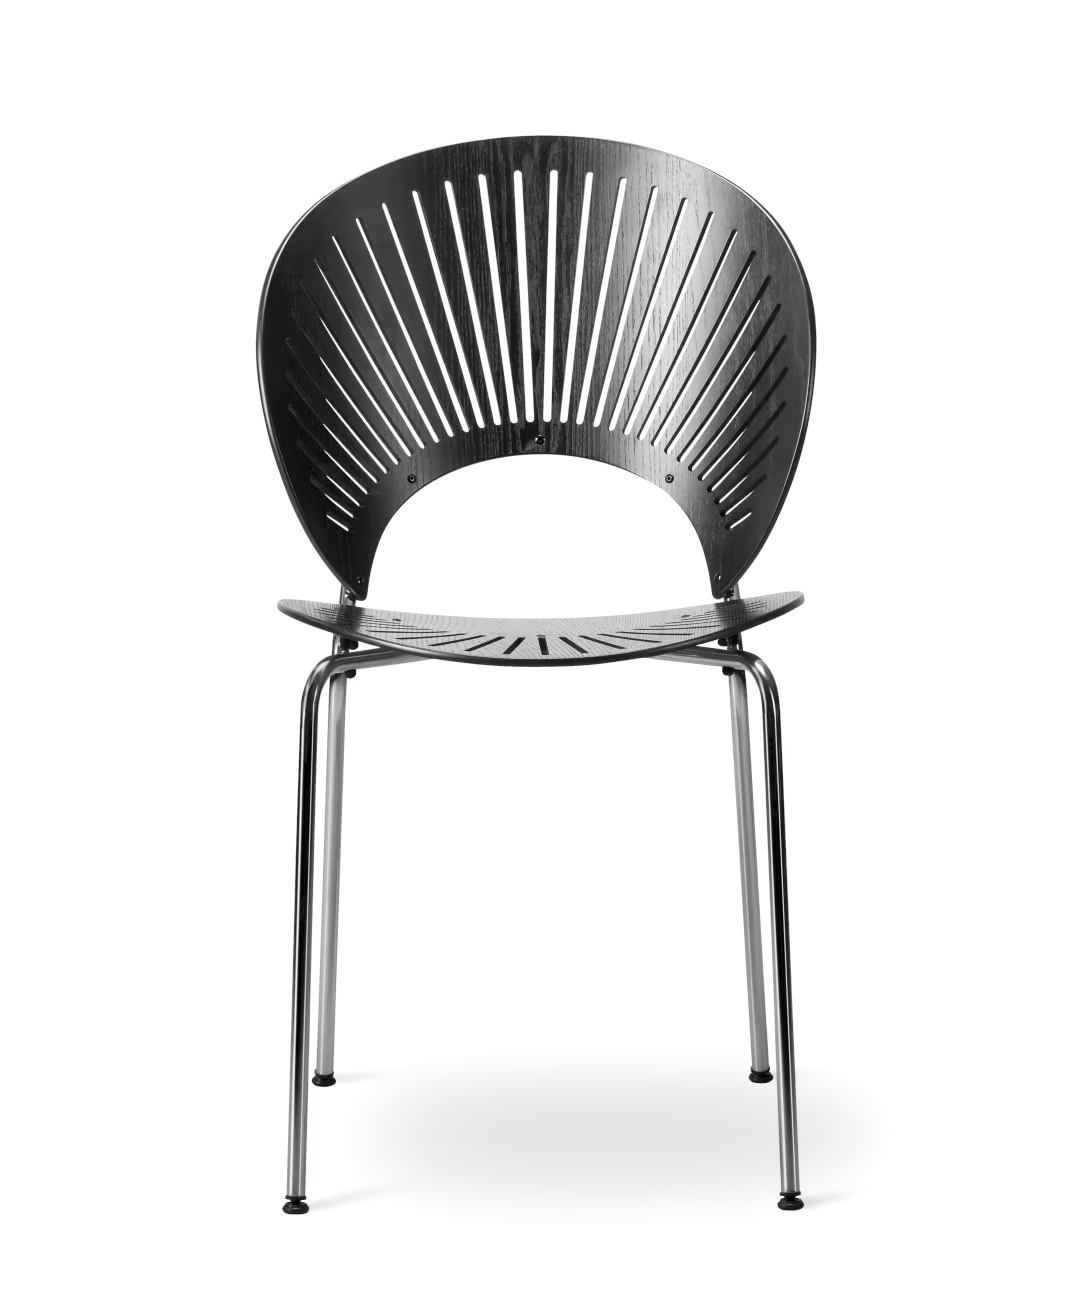 Trinidad Stuhl, schwarz / walnuss lackiert